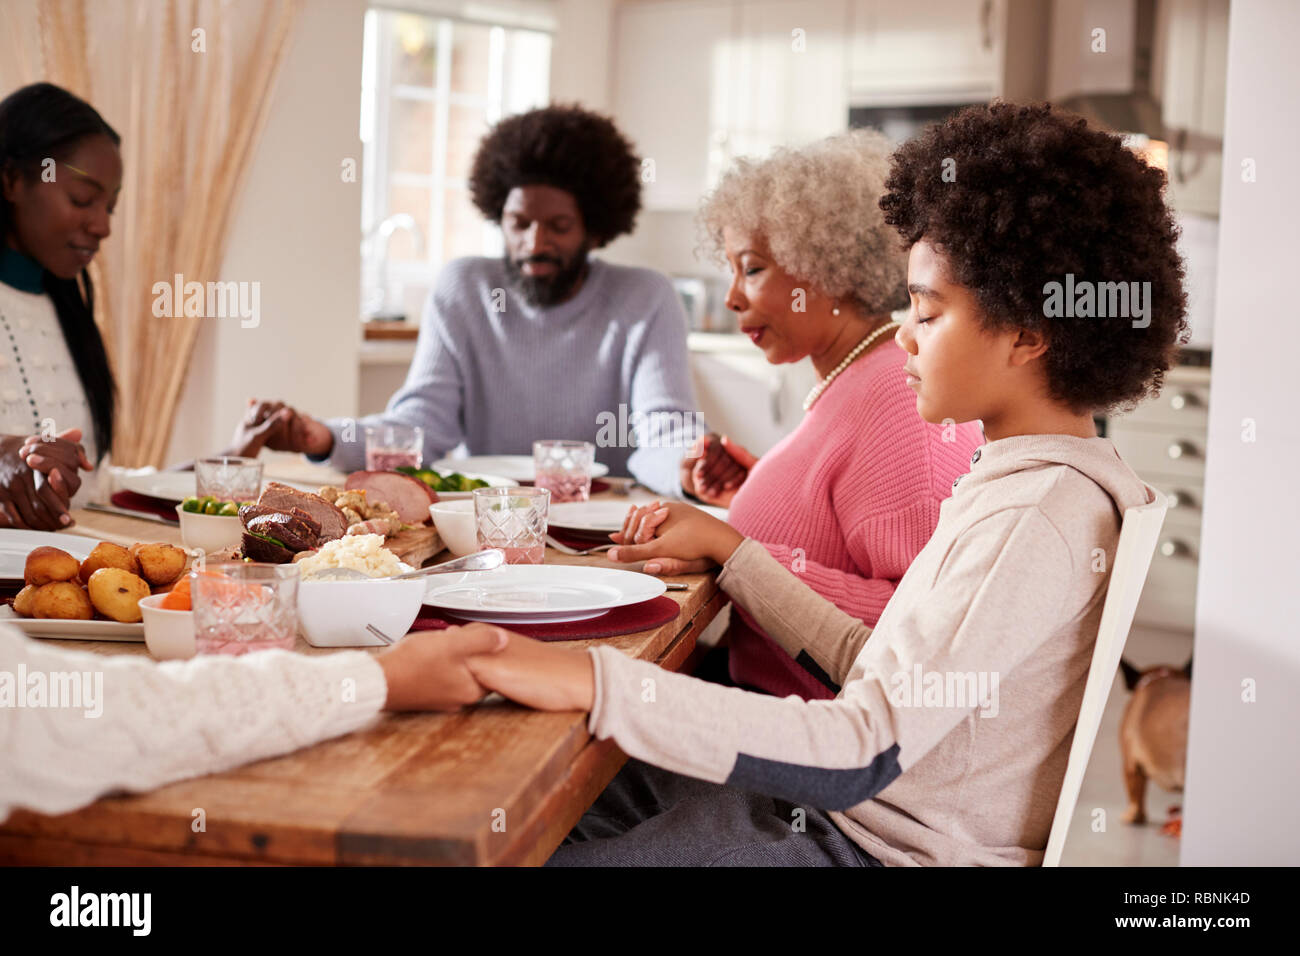 Multi generation hispanic family et disant grace avant de manger leur dîner dimanche, side view Banque D'Images